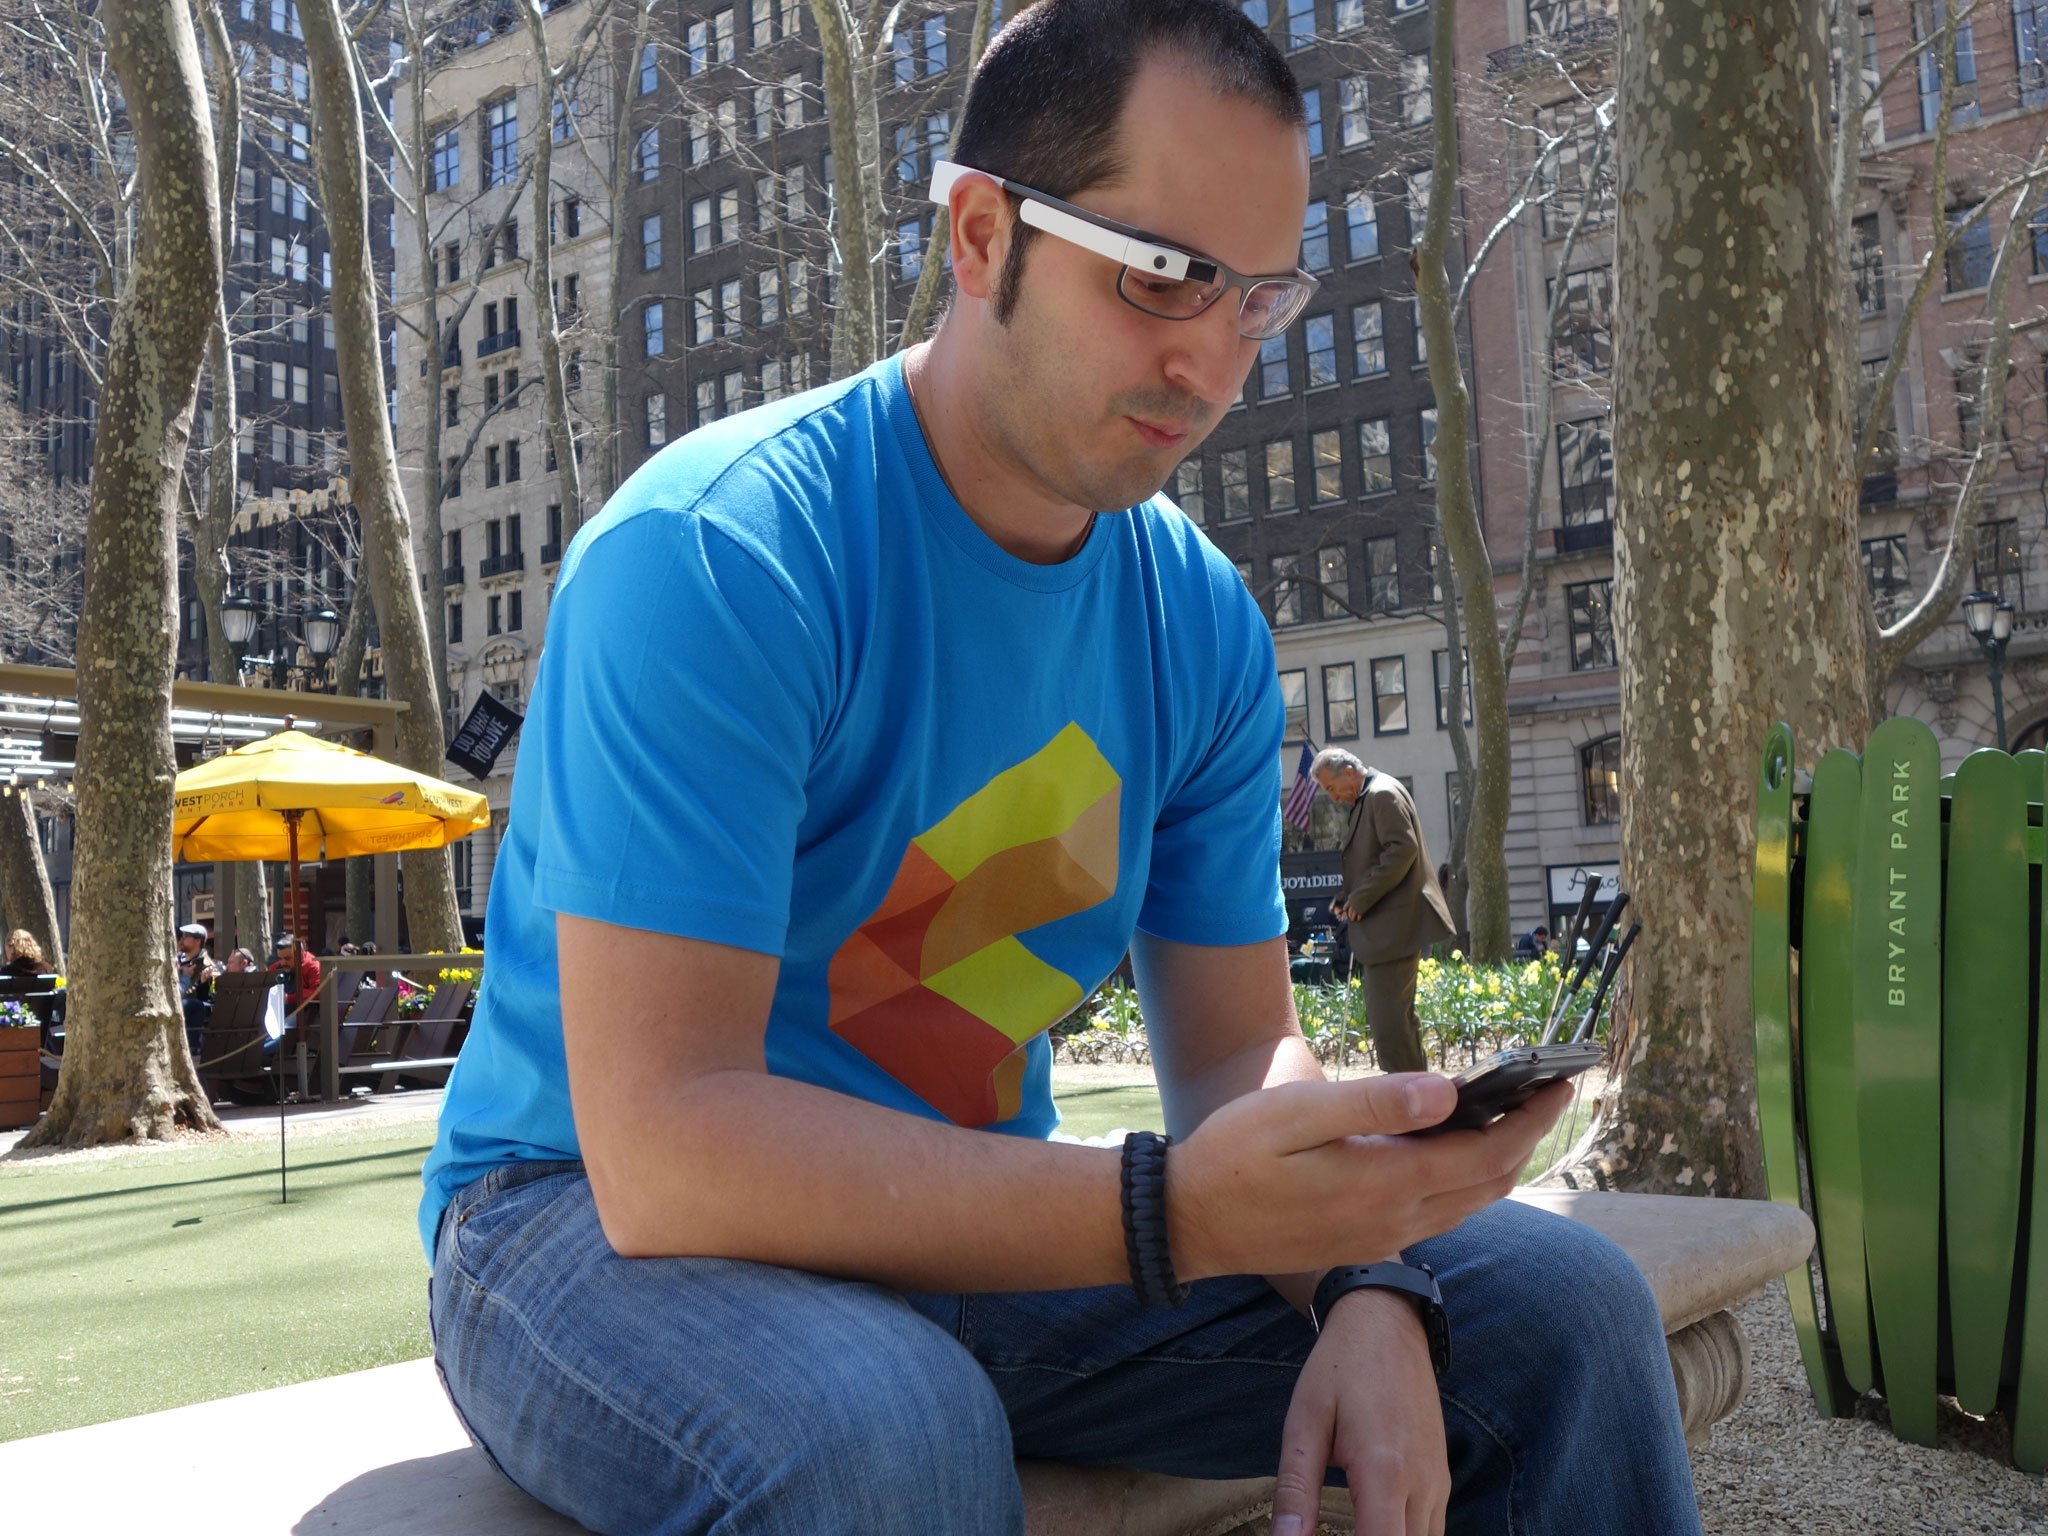 Meet Google Glass